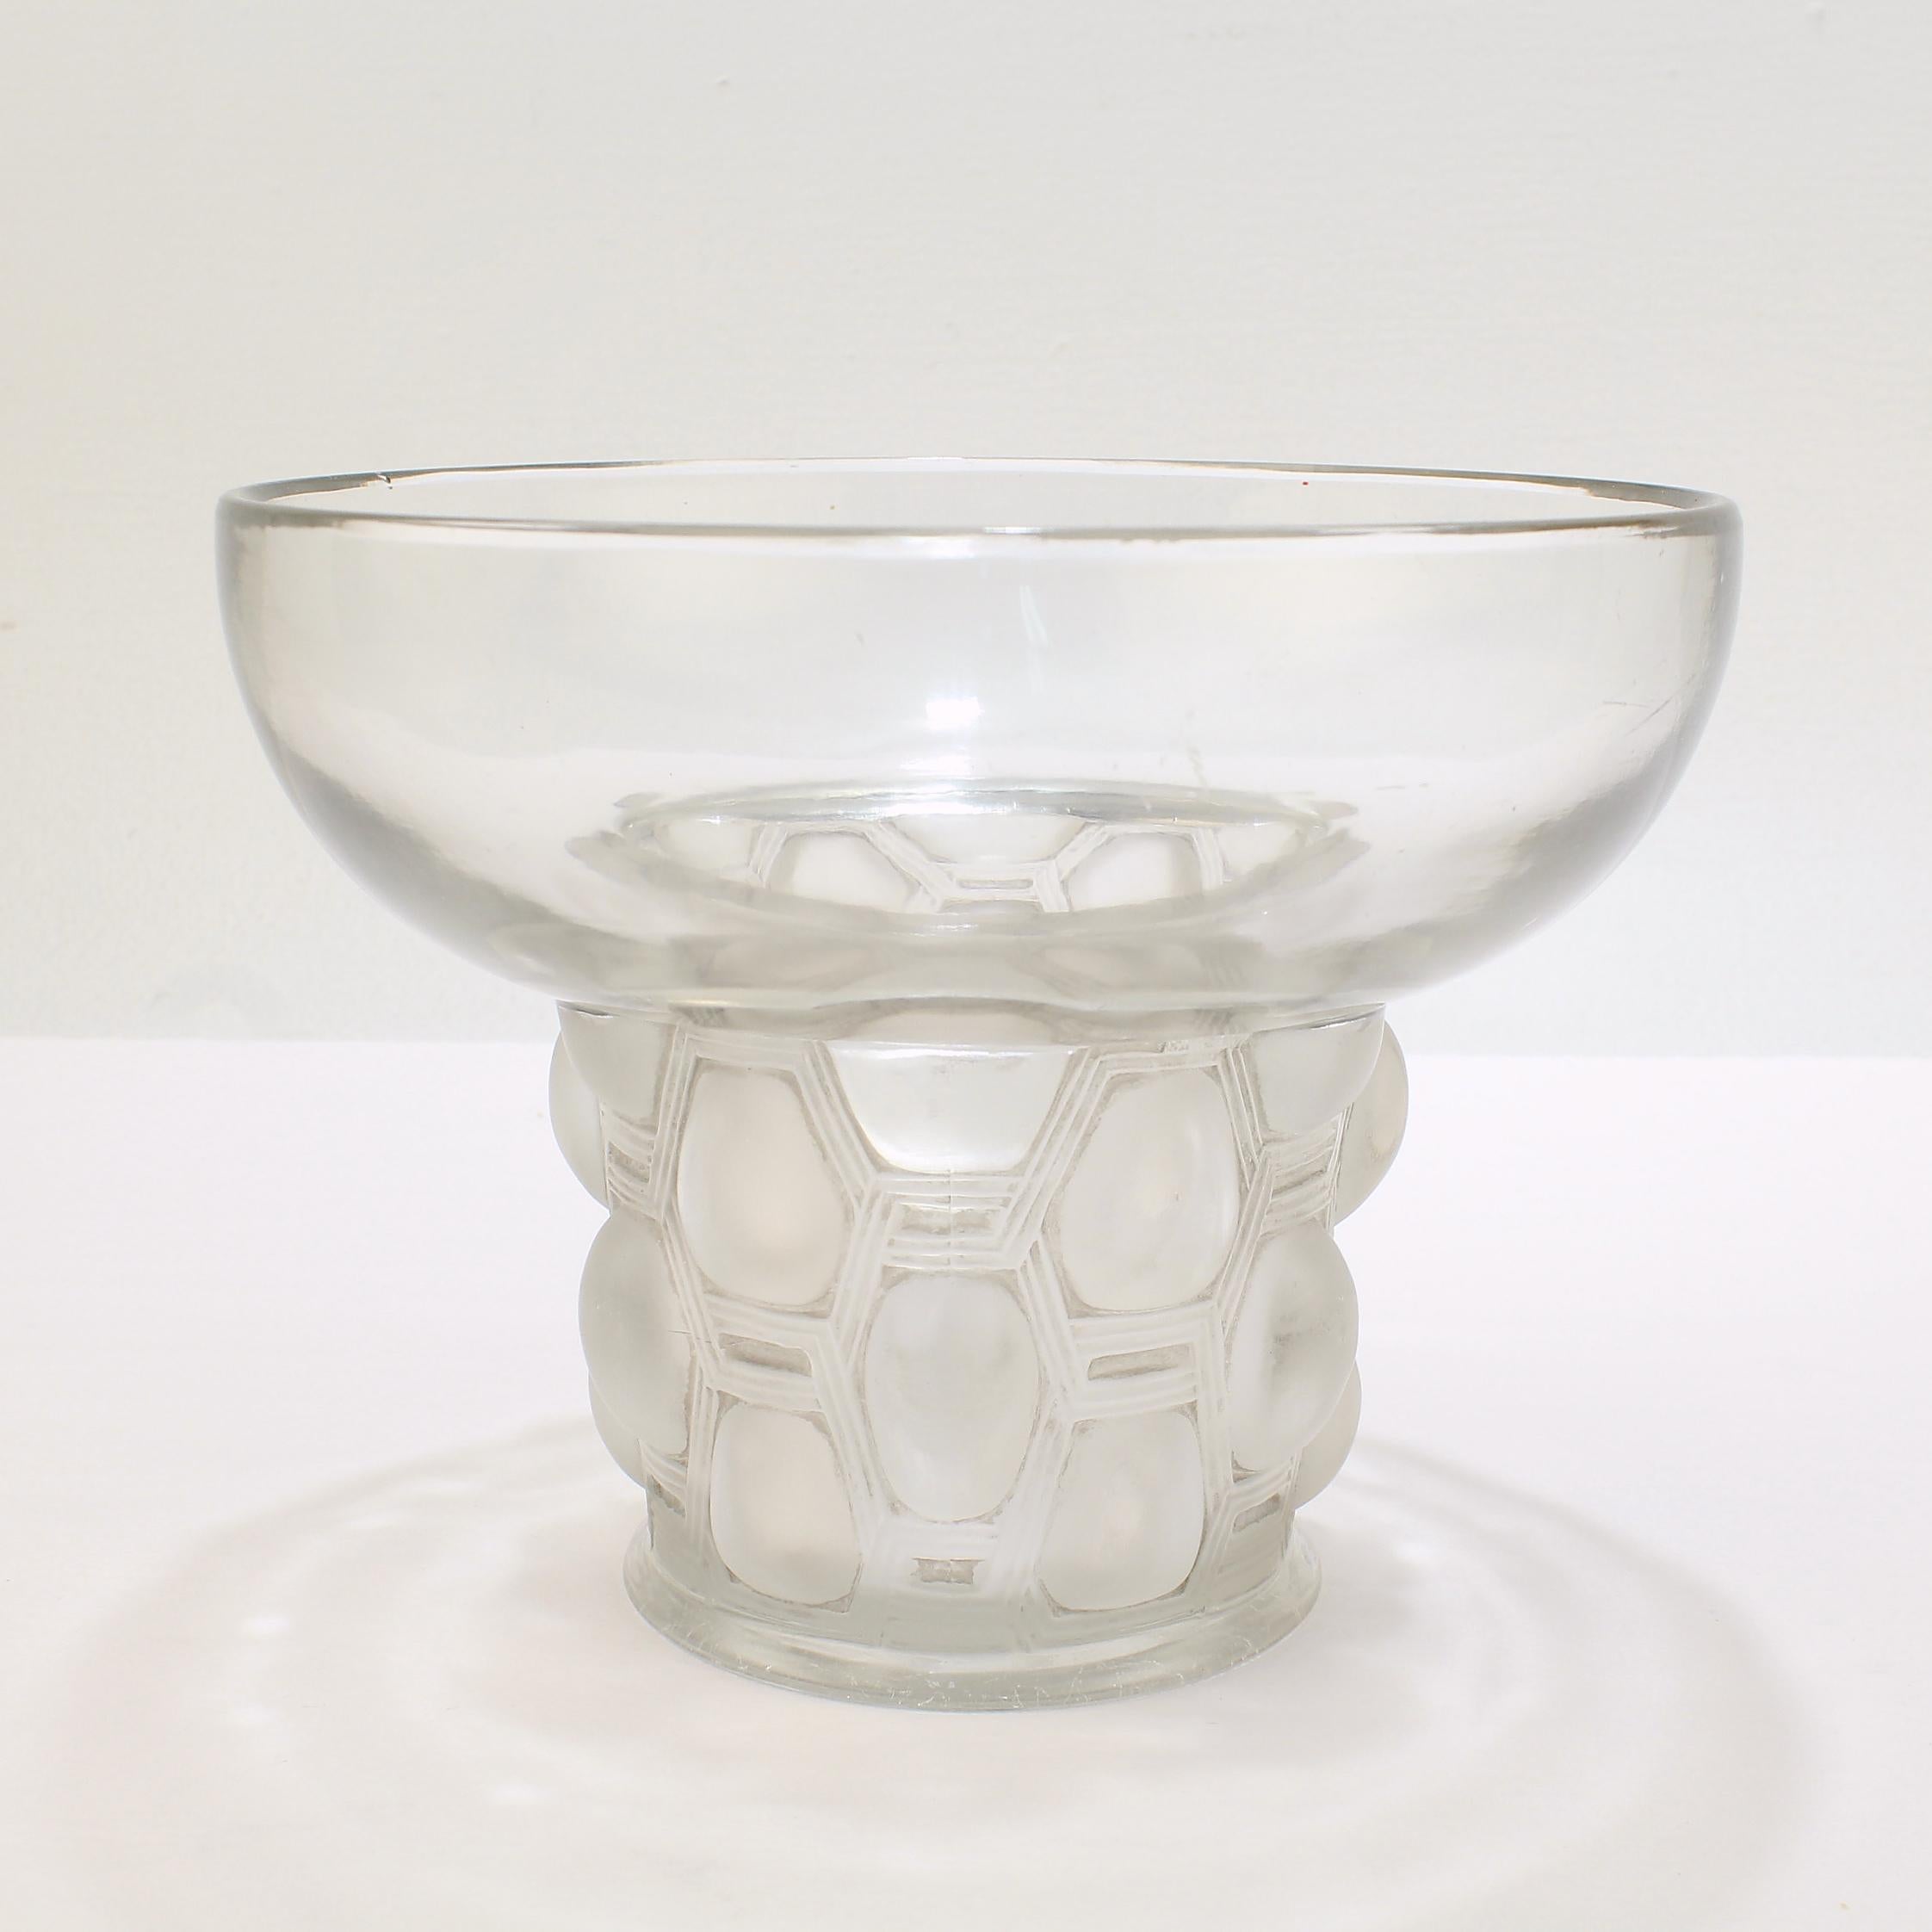 Signed Rene Lalique Art Deco Period Beautreillis Art Glass Vase 4